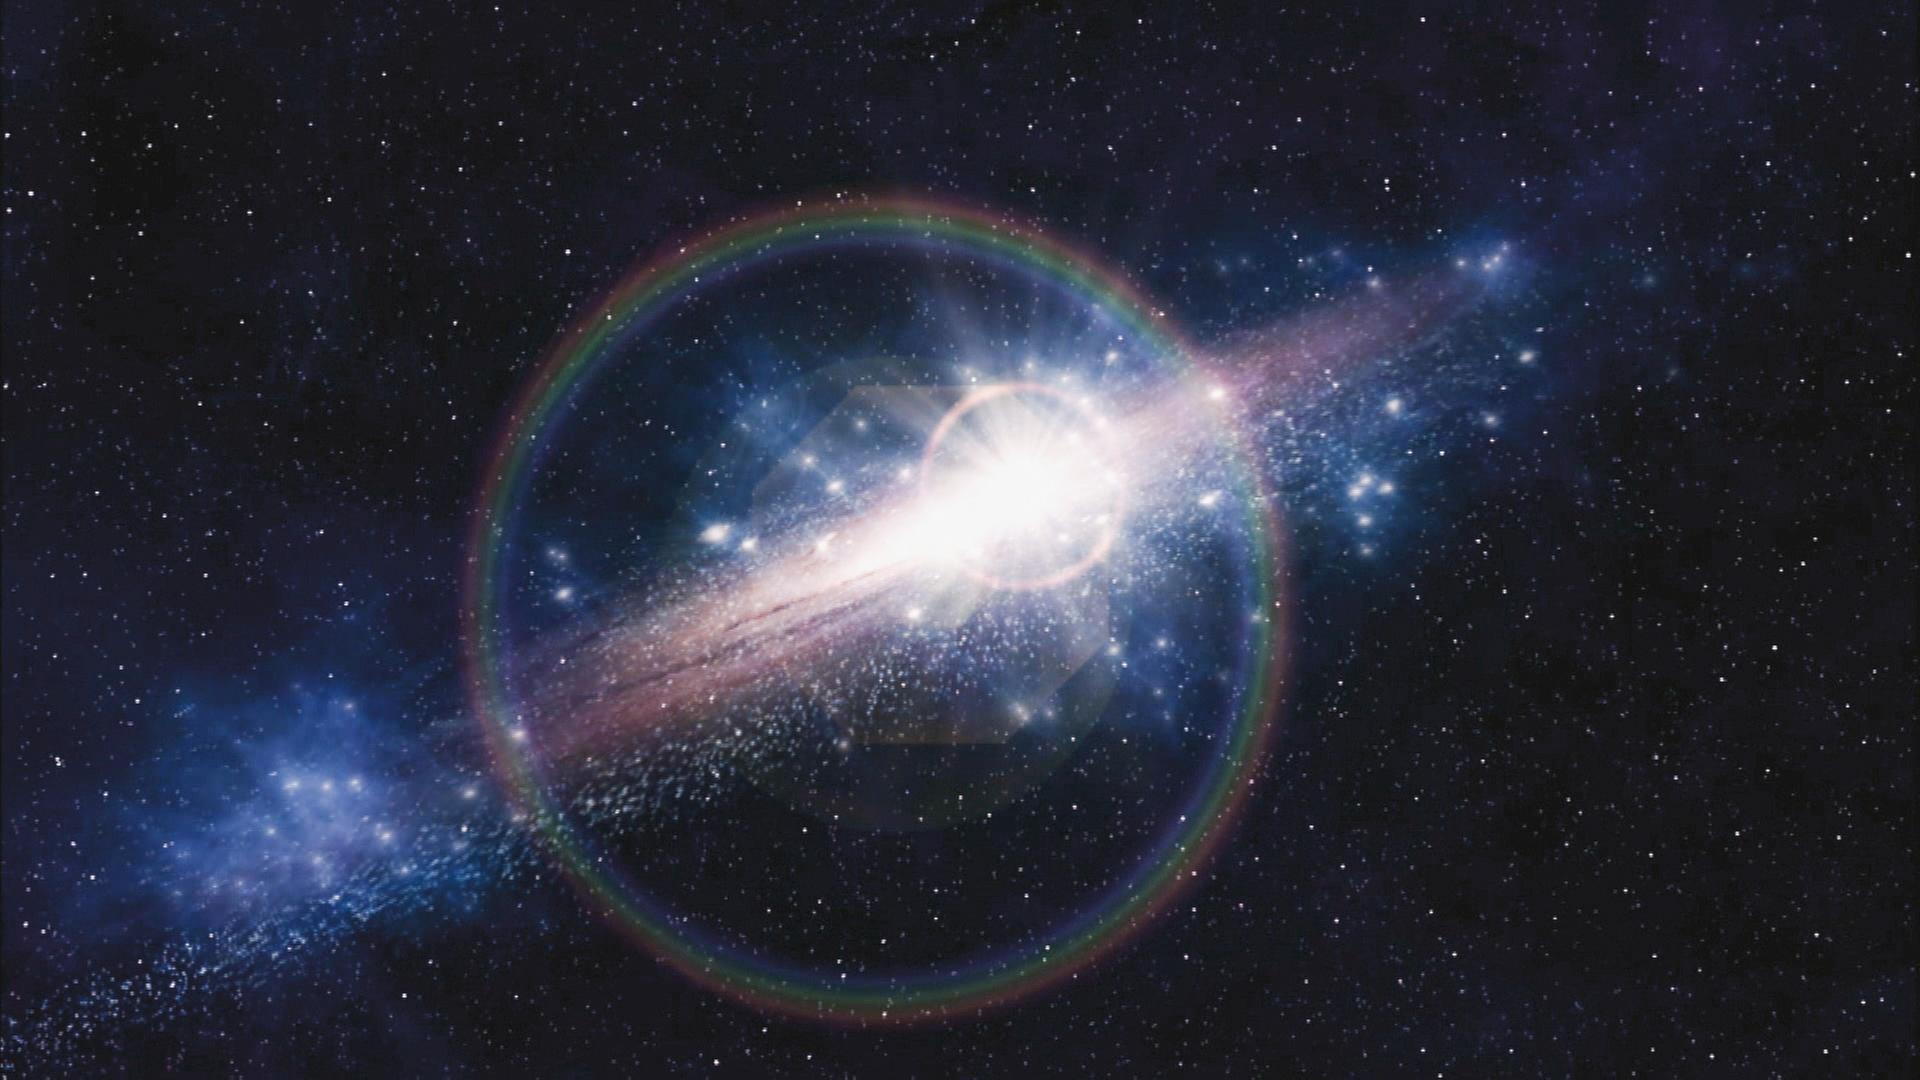  Computergrafik. Im Weltraum ist eine ellipsenförmige Galaxie zu sehen, die hell strahlt.